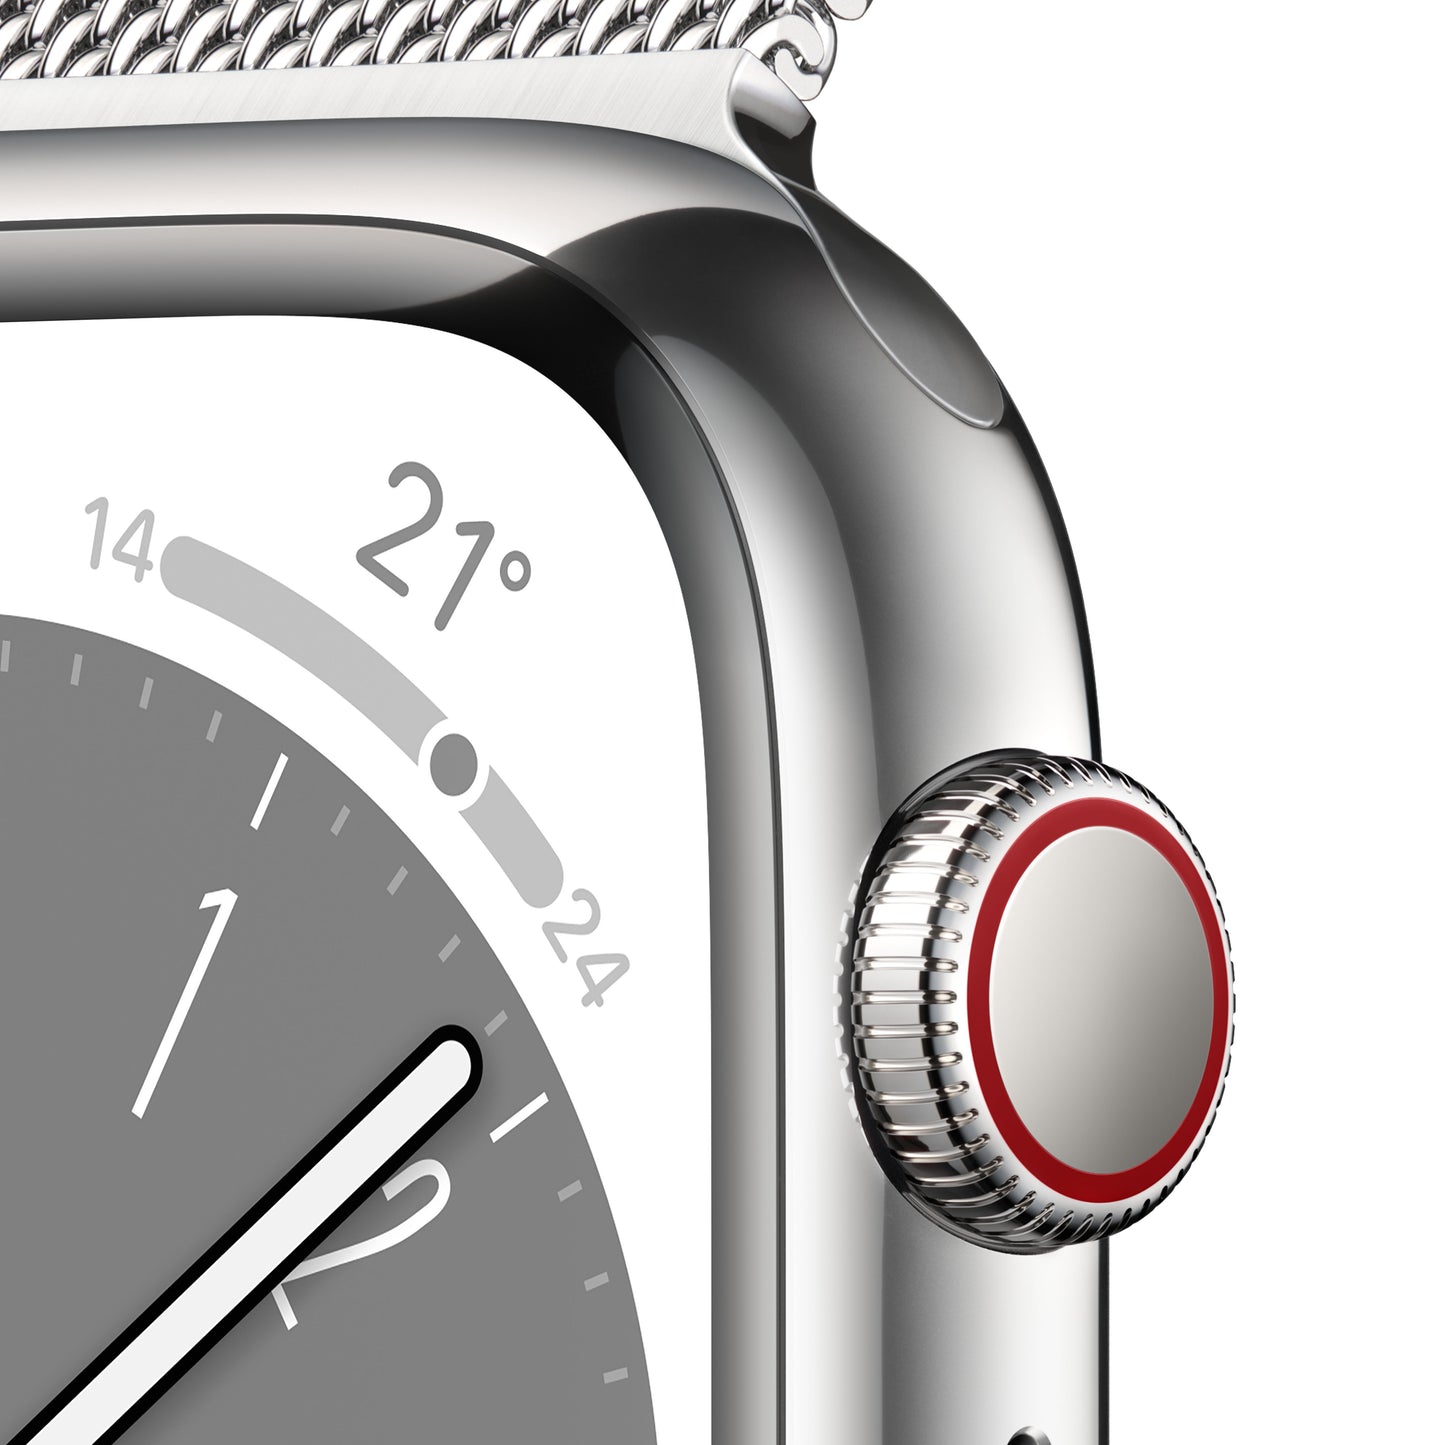 Apple Watch Series 8 (GPS  + Cellular) de 41 mm - Caja de acero inoxidable en plata - Pulsera Milanese Loop en plata